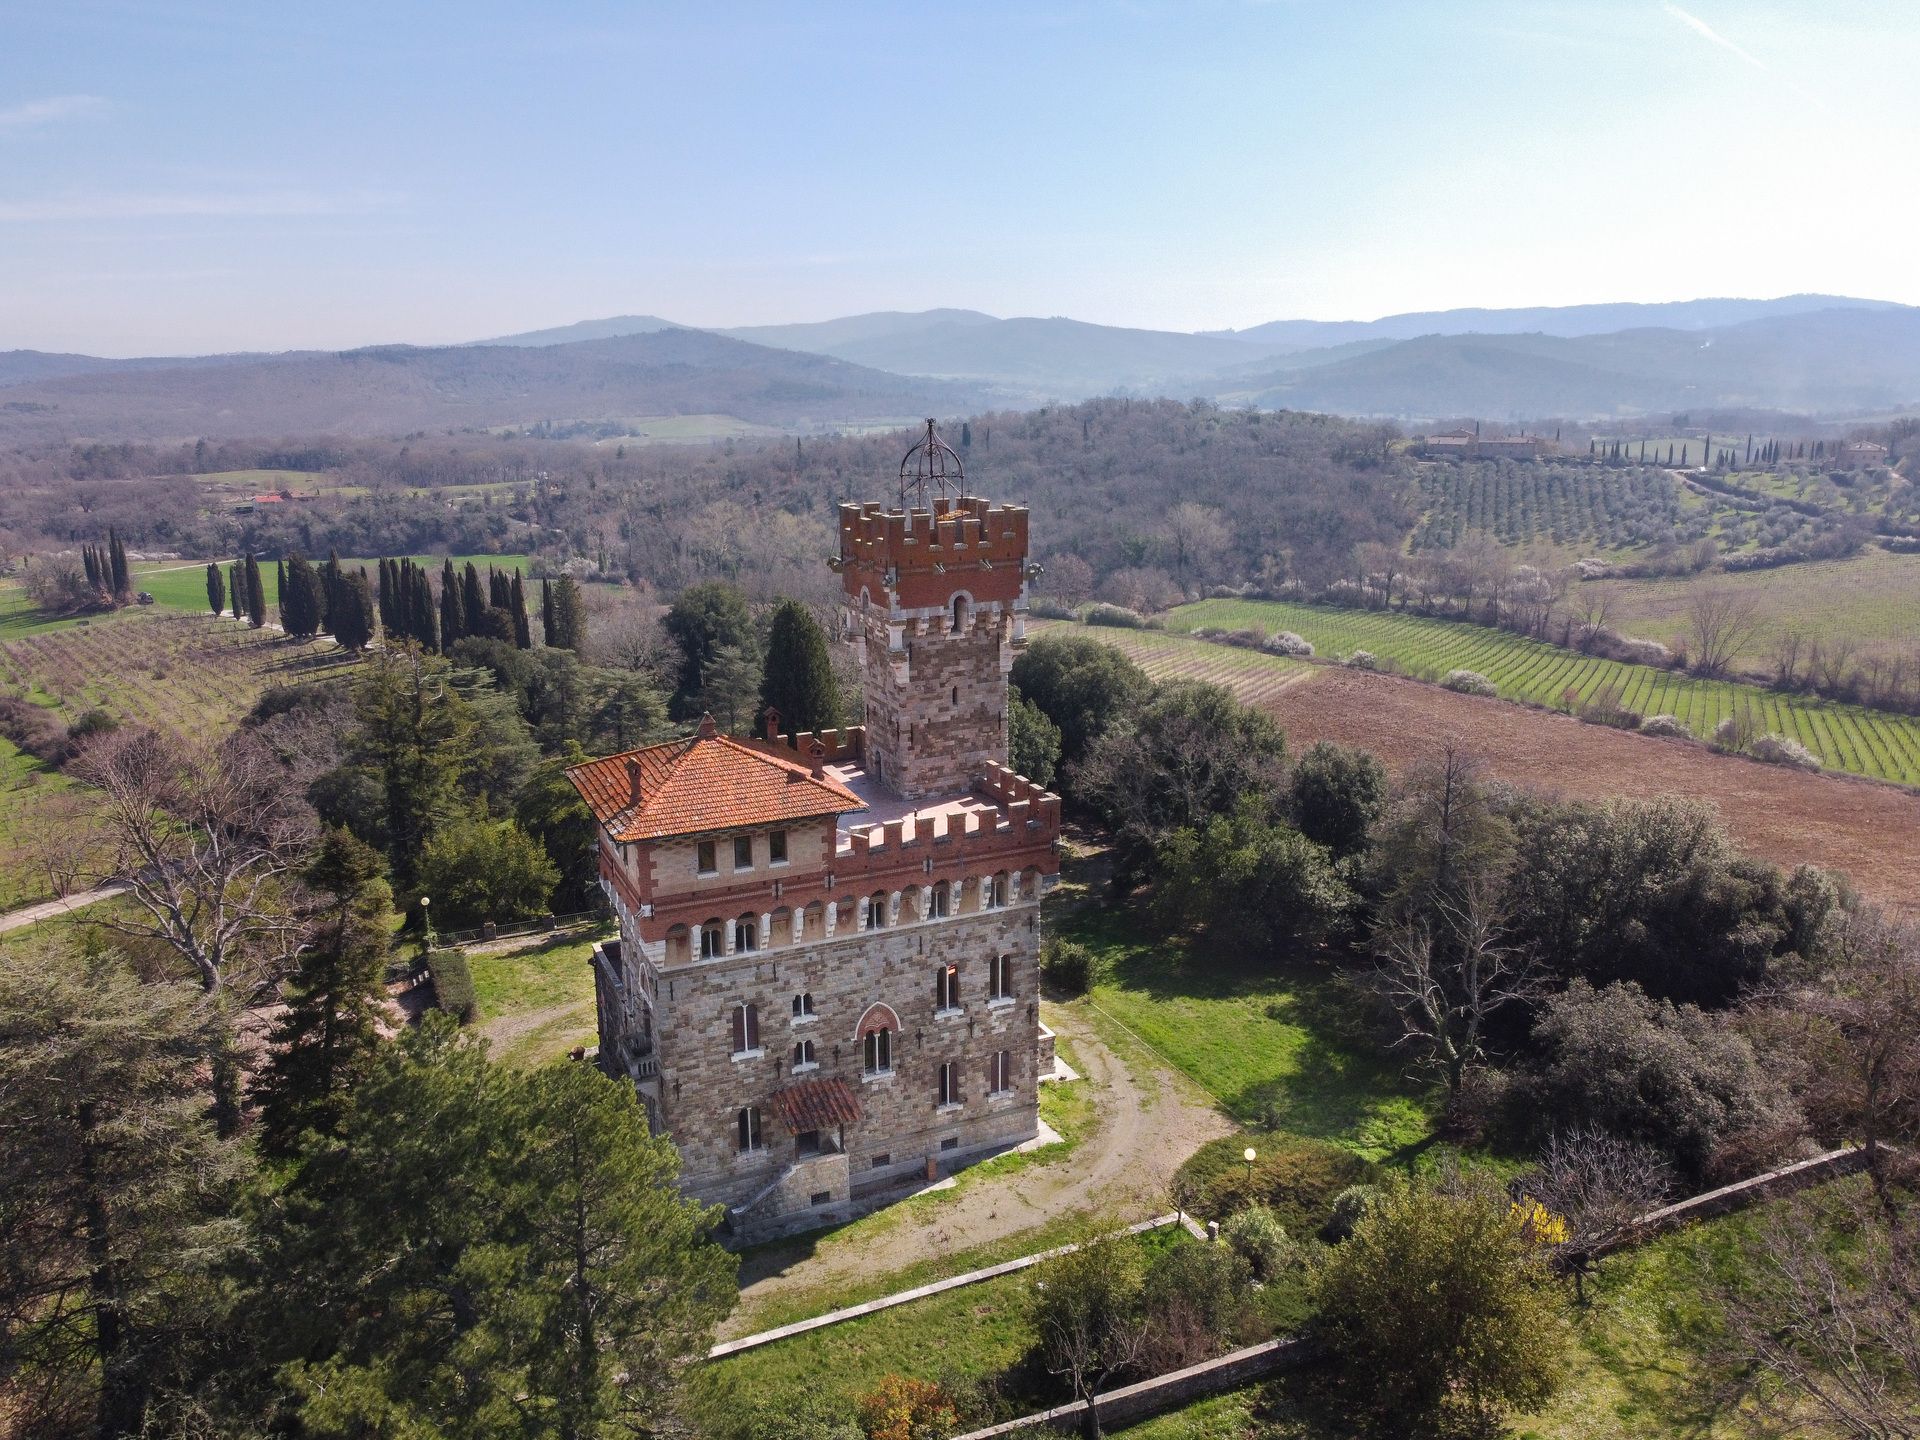 Se vende castillo in zona tranquila Bucine Toscana